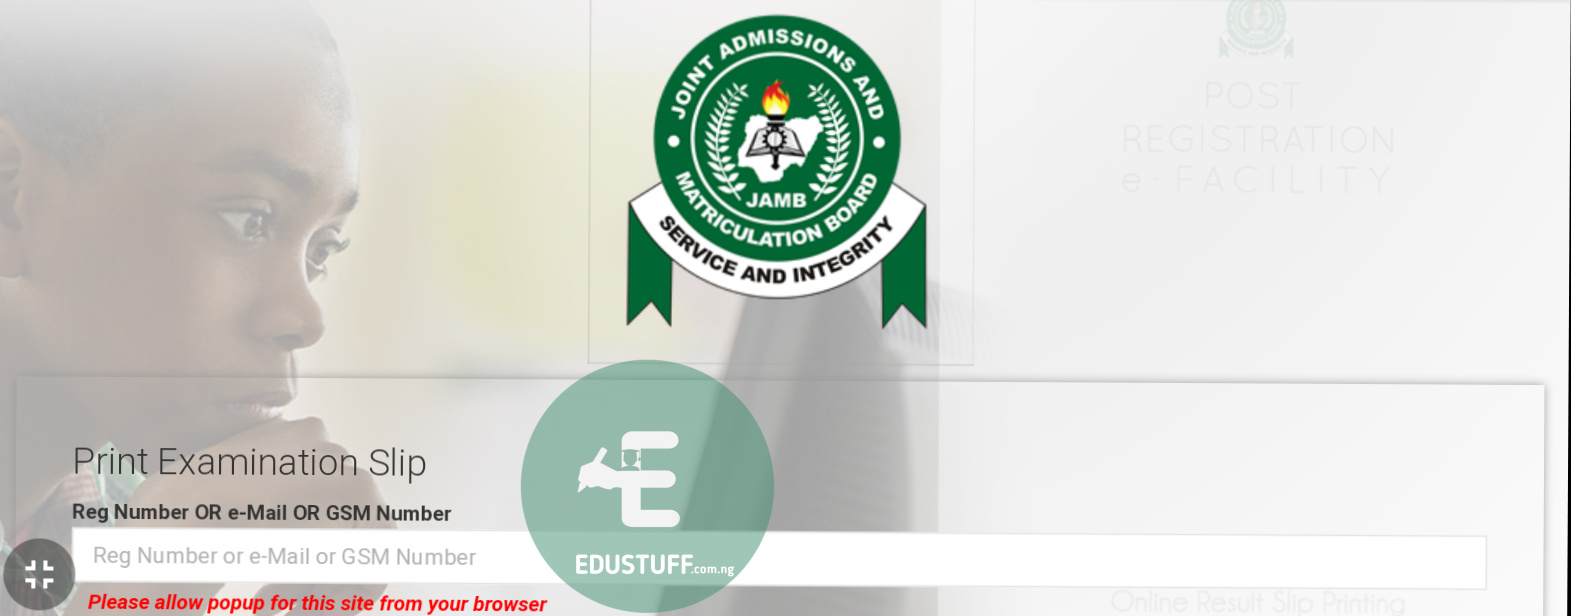 Jamb exam slip printing portal